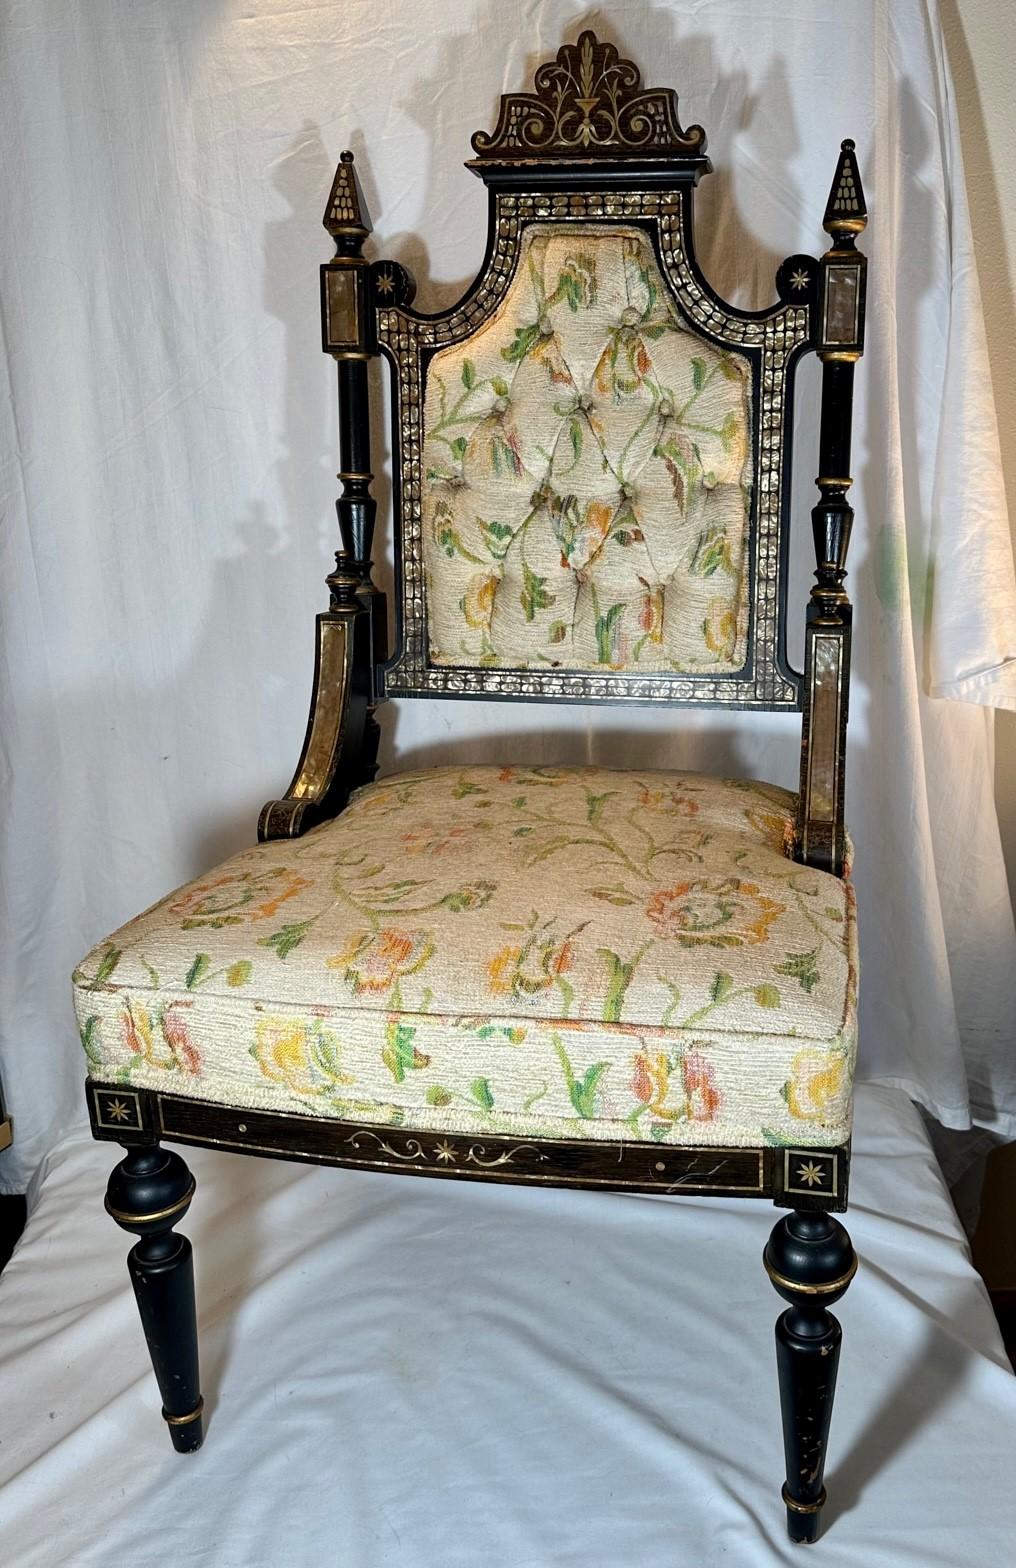 Mid Victorian Ebonized Stuhl mit Perlmutt-Inlay.

Seltener antiker Beistellstuhl mit Intarsien aus Perlmutt. Das ebonisierte und goldverzierte Holz ist geschnitzt und gedrechselt mit feinen Details. Der mittelviktorianische Stuhl stammt